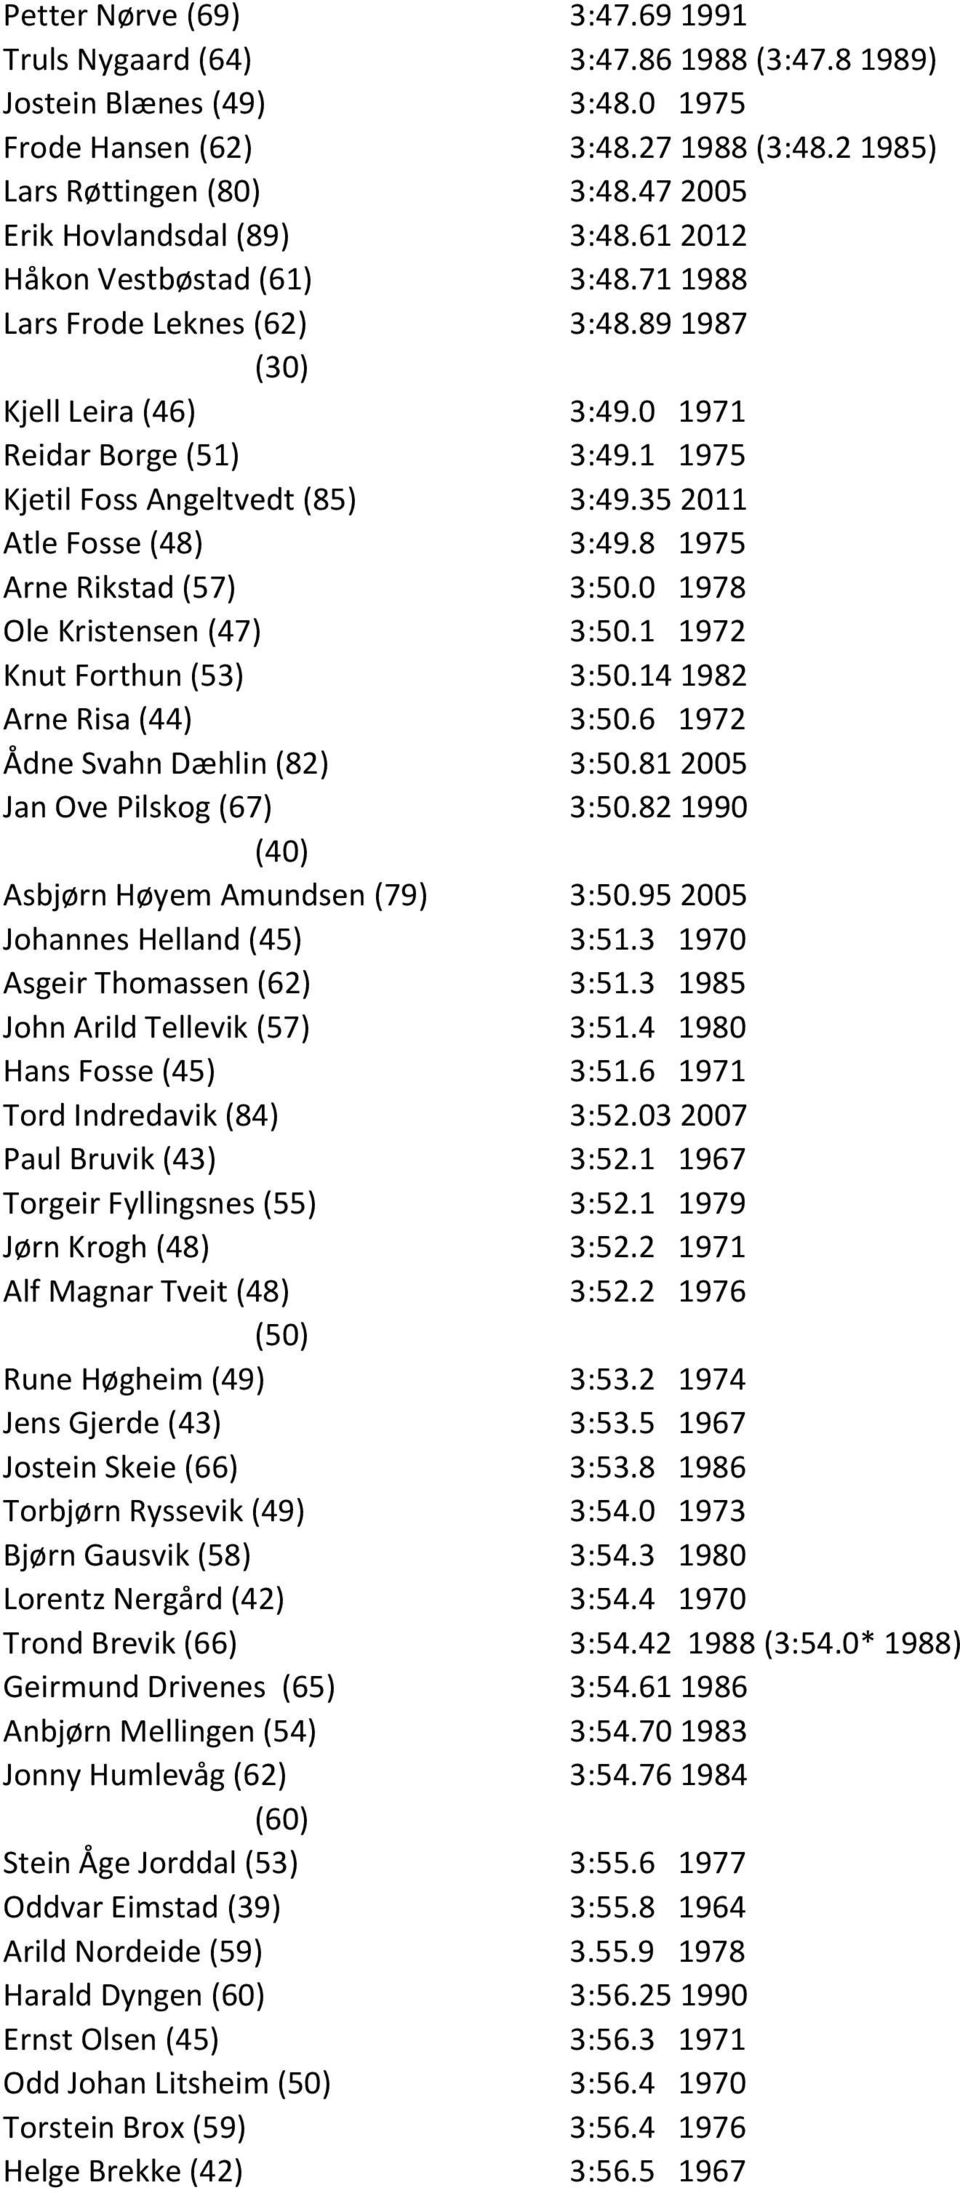 1 1975 Kjetil Foss Angeltvedt (85) 3:49.35 2011 Atle Fosse (48) 3:49.8 1975 Arne Rikstad (57) 3:50.0 1978 Ole Kristensen (47) 3:50.1 1972 Knut Forthun (53) 3:50.14 1982 Arne Risa (44) 3:50.